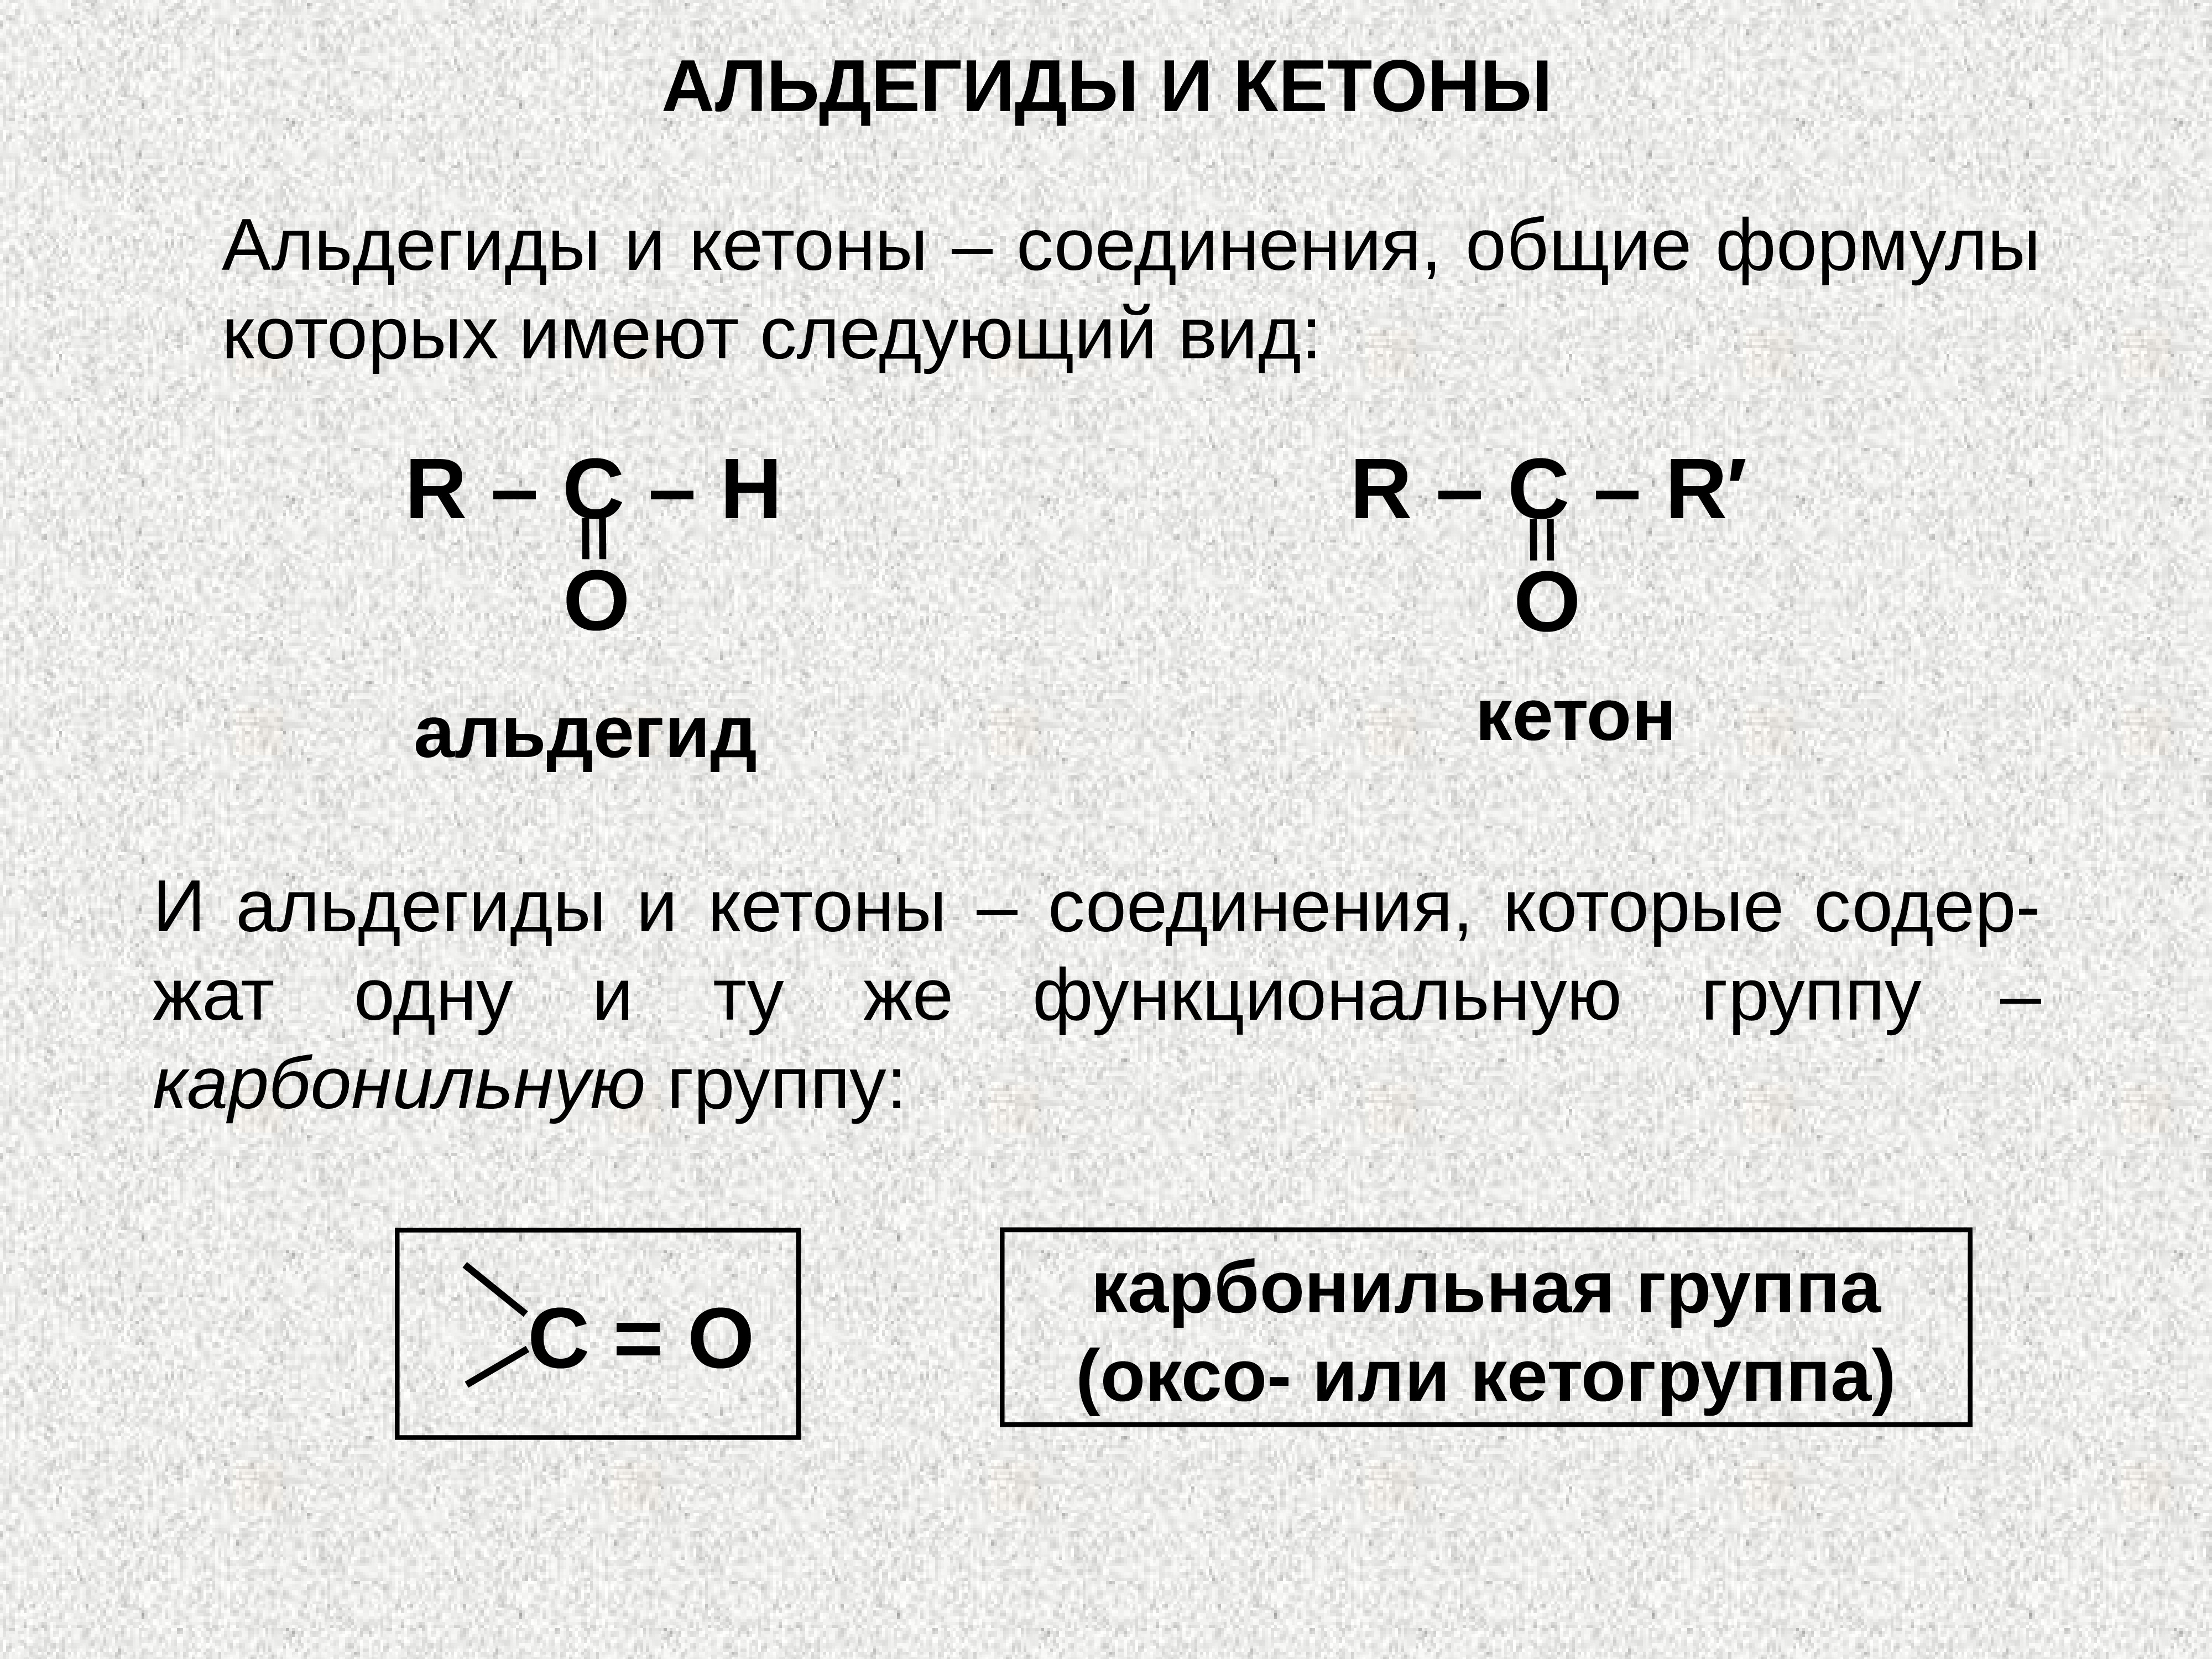 1 альдегидная группа. Карбонильная группа альдегидов. Какова общая формула альдегидов и кетонов. Карбонильная группа в альдегидах и кетонах. Альдегиды конспект по химии 10 класс.